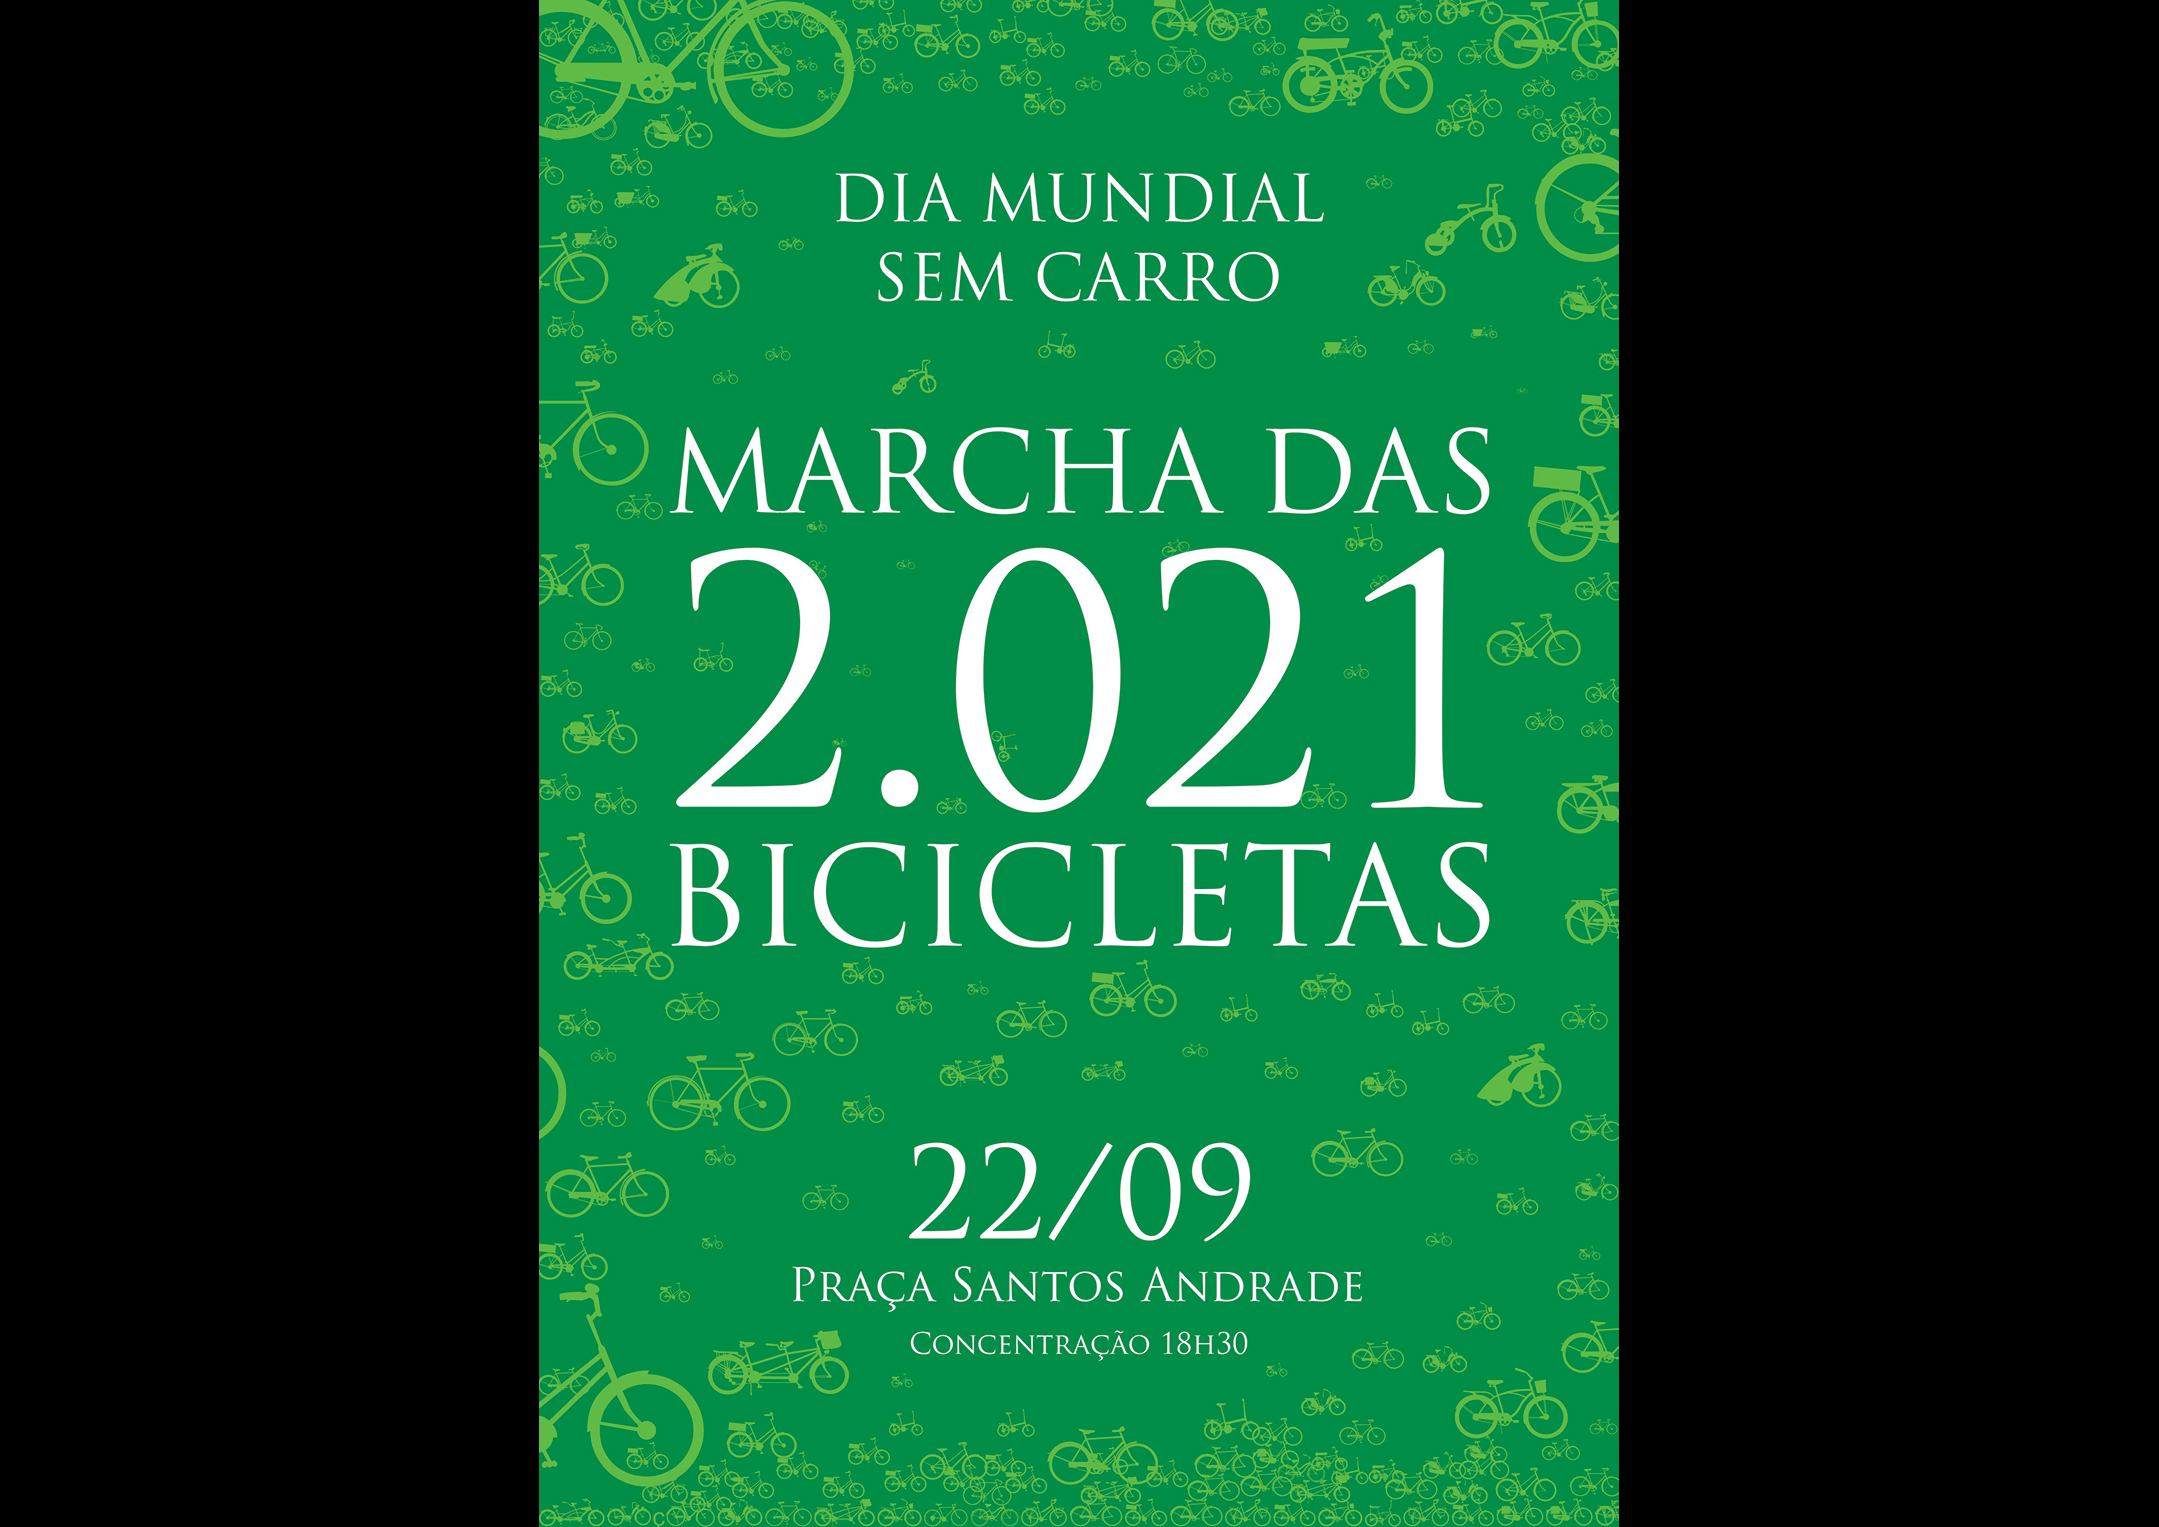 Marcha das 2021 Bicicletas